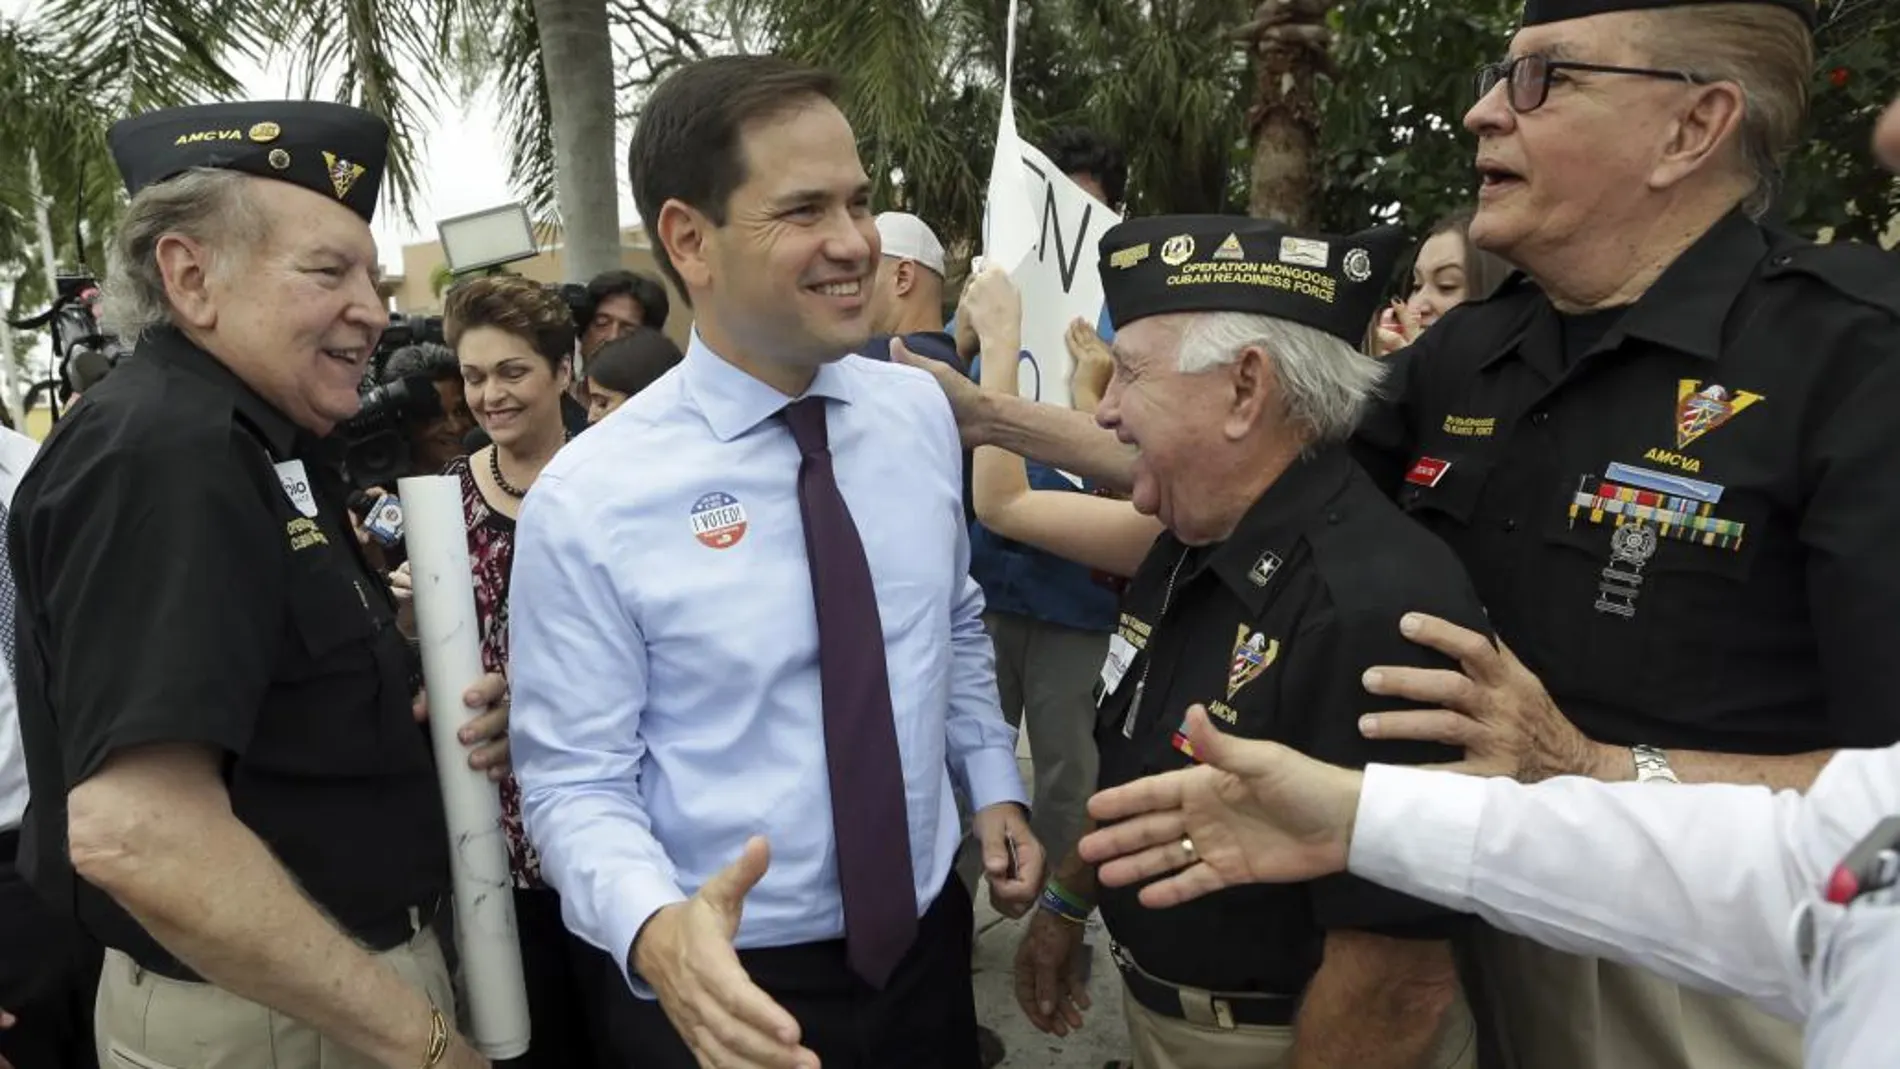 El senador republicano Marco Rubio gana la reelección en Florida